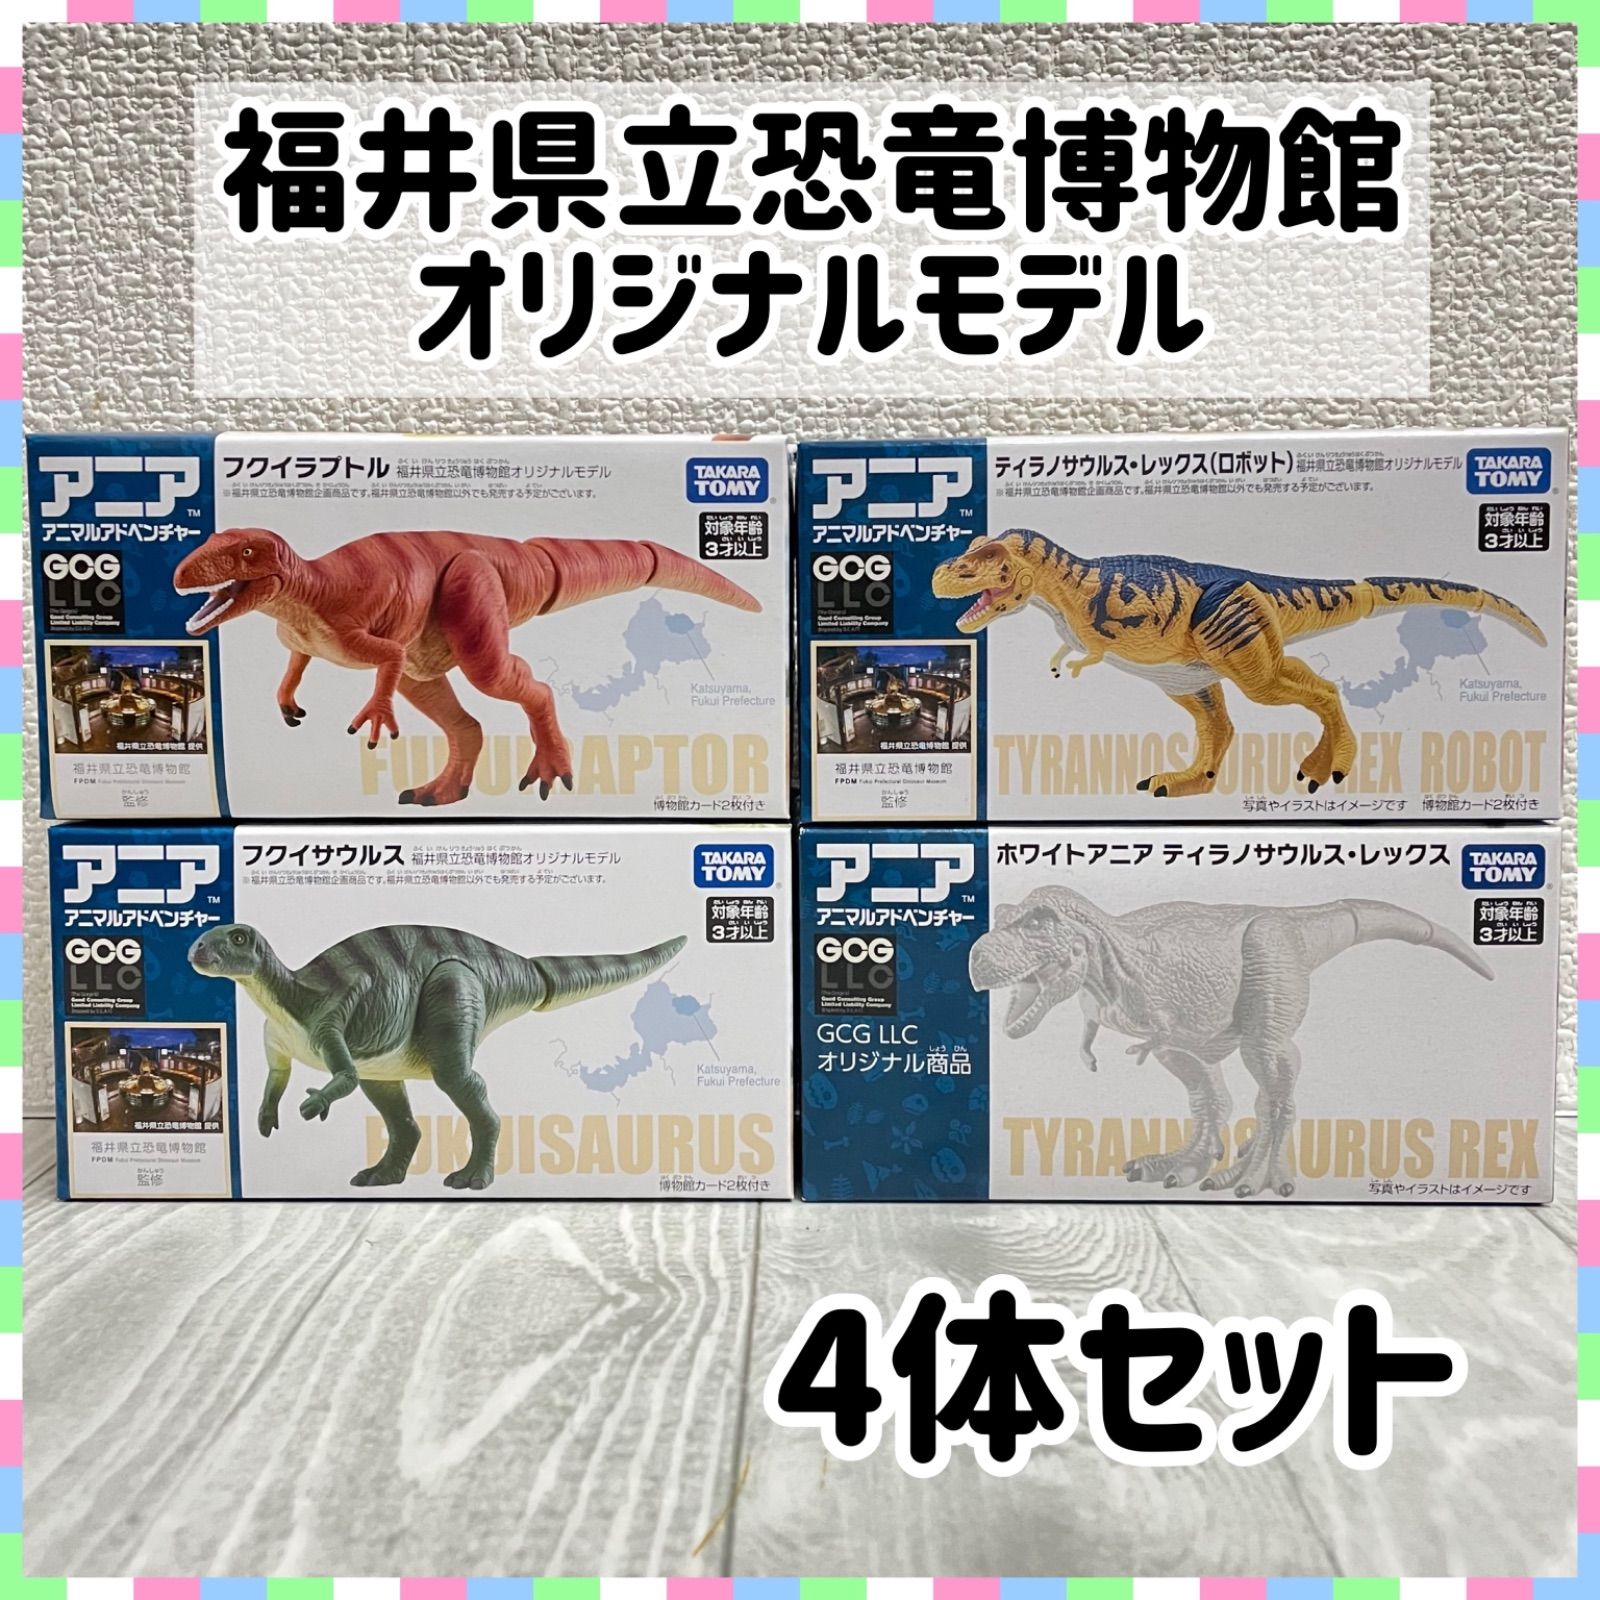 新品未開封 福井県立恐竜博物館オリジナルモデルの限定アニア 4個 